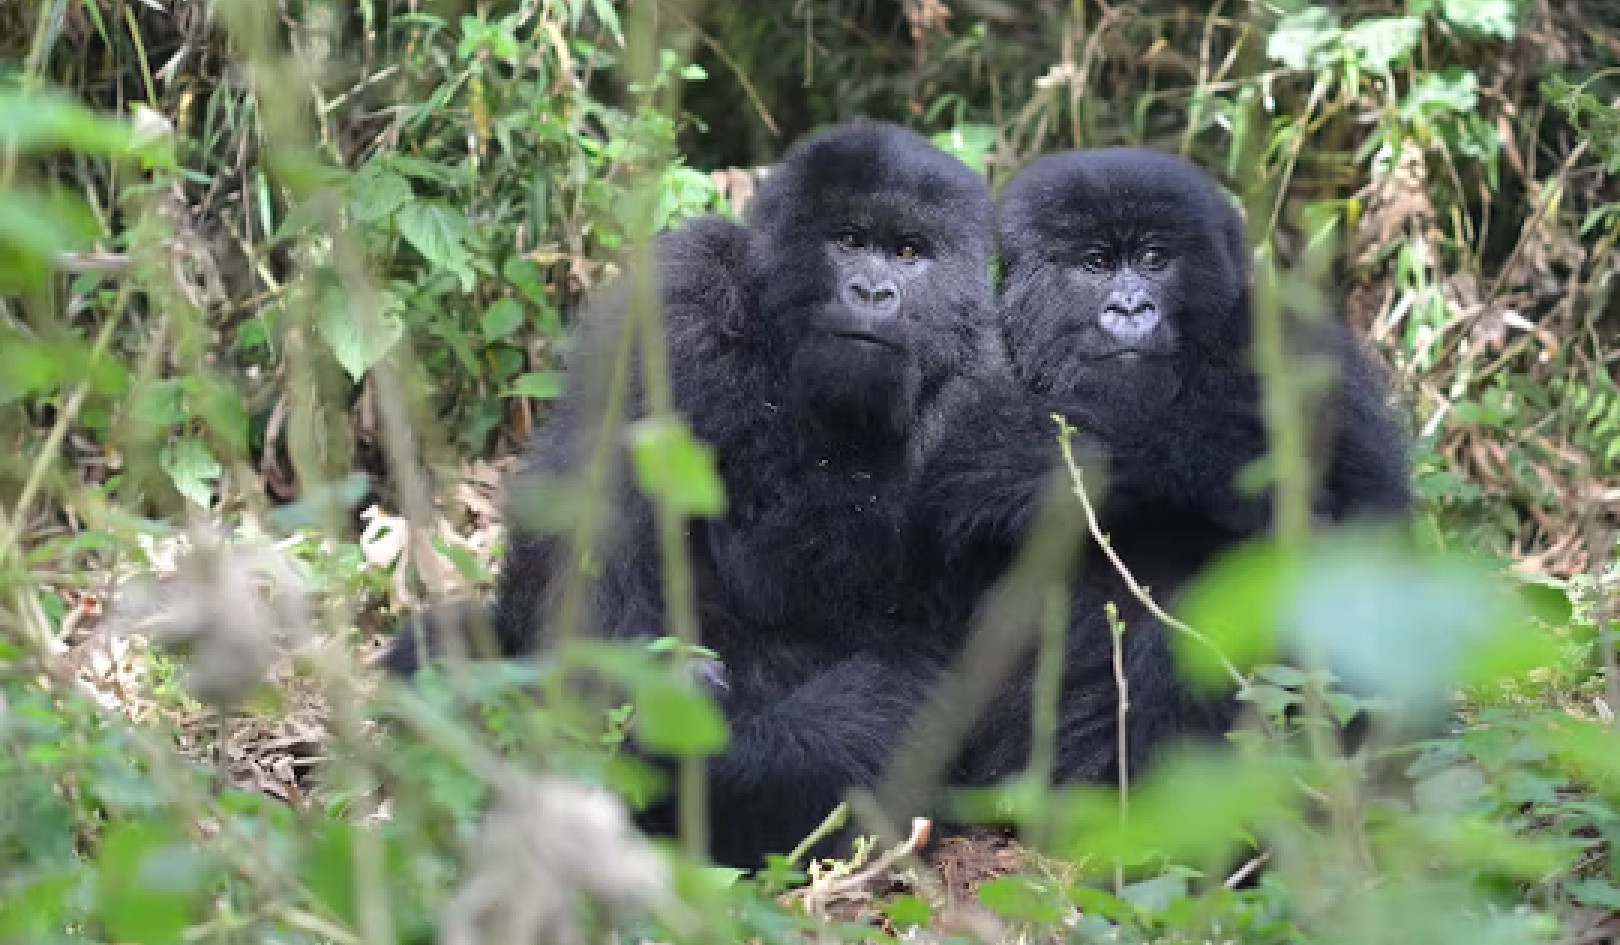 Trivs i ansiktet av motgångar: Resilient gorillor avslöjar ledtrådar om att övervinna barndomens olycka